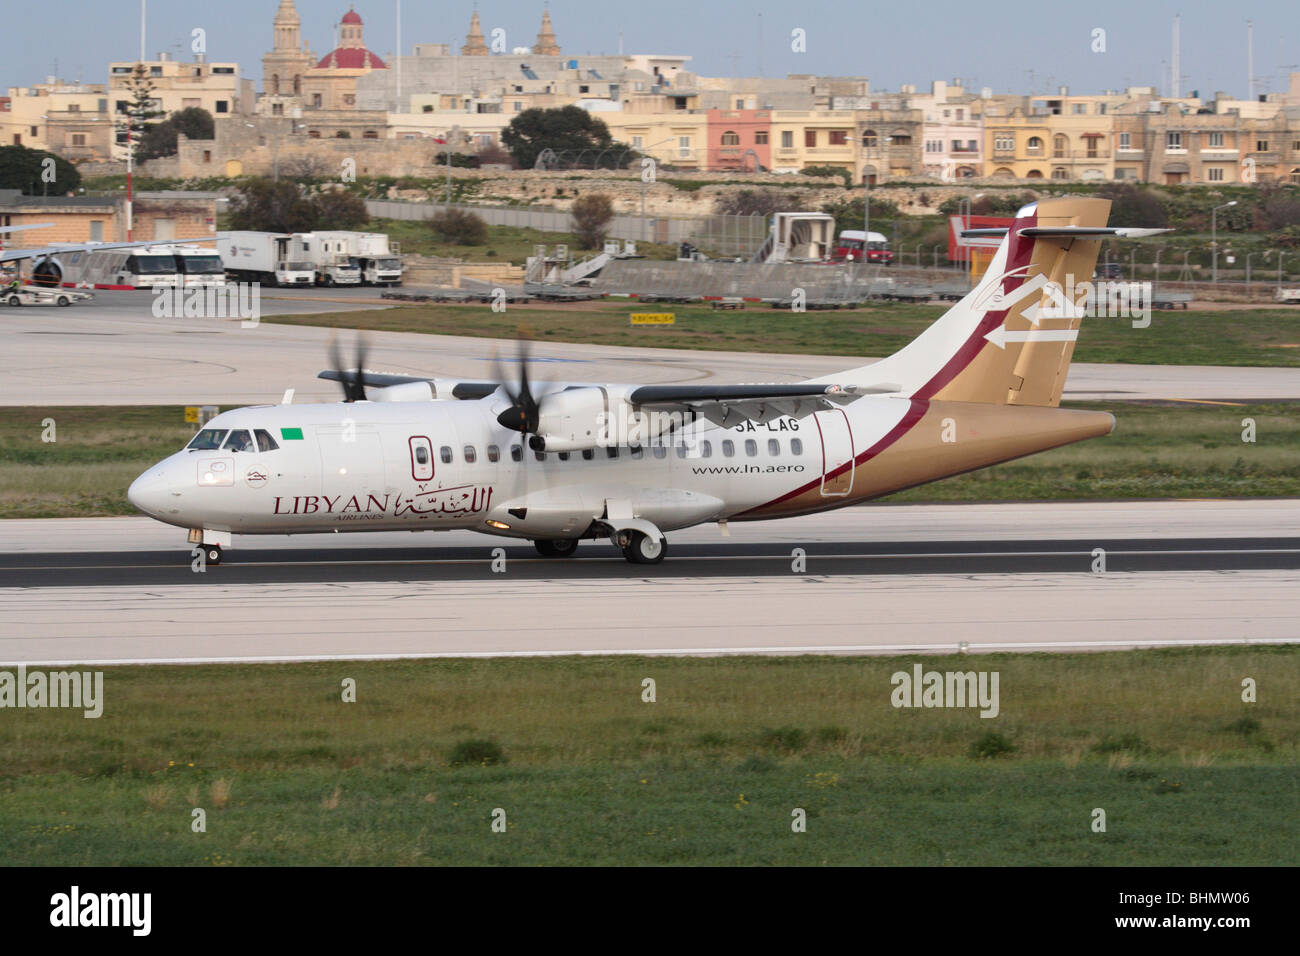 Libyan Airlines turbopropulseurs ATR 42-500 petit avion de passagers sur la piste au décollage de Malte Banque D'Images